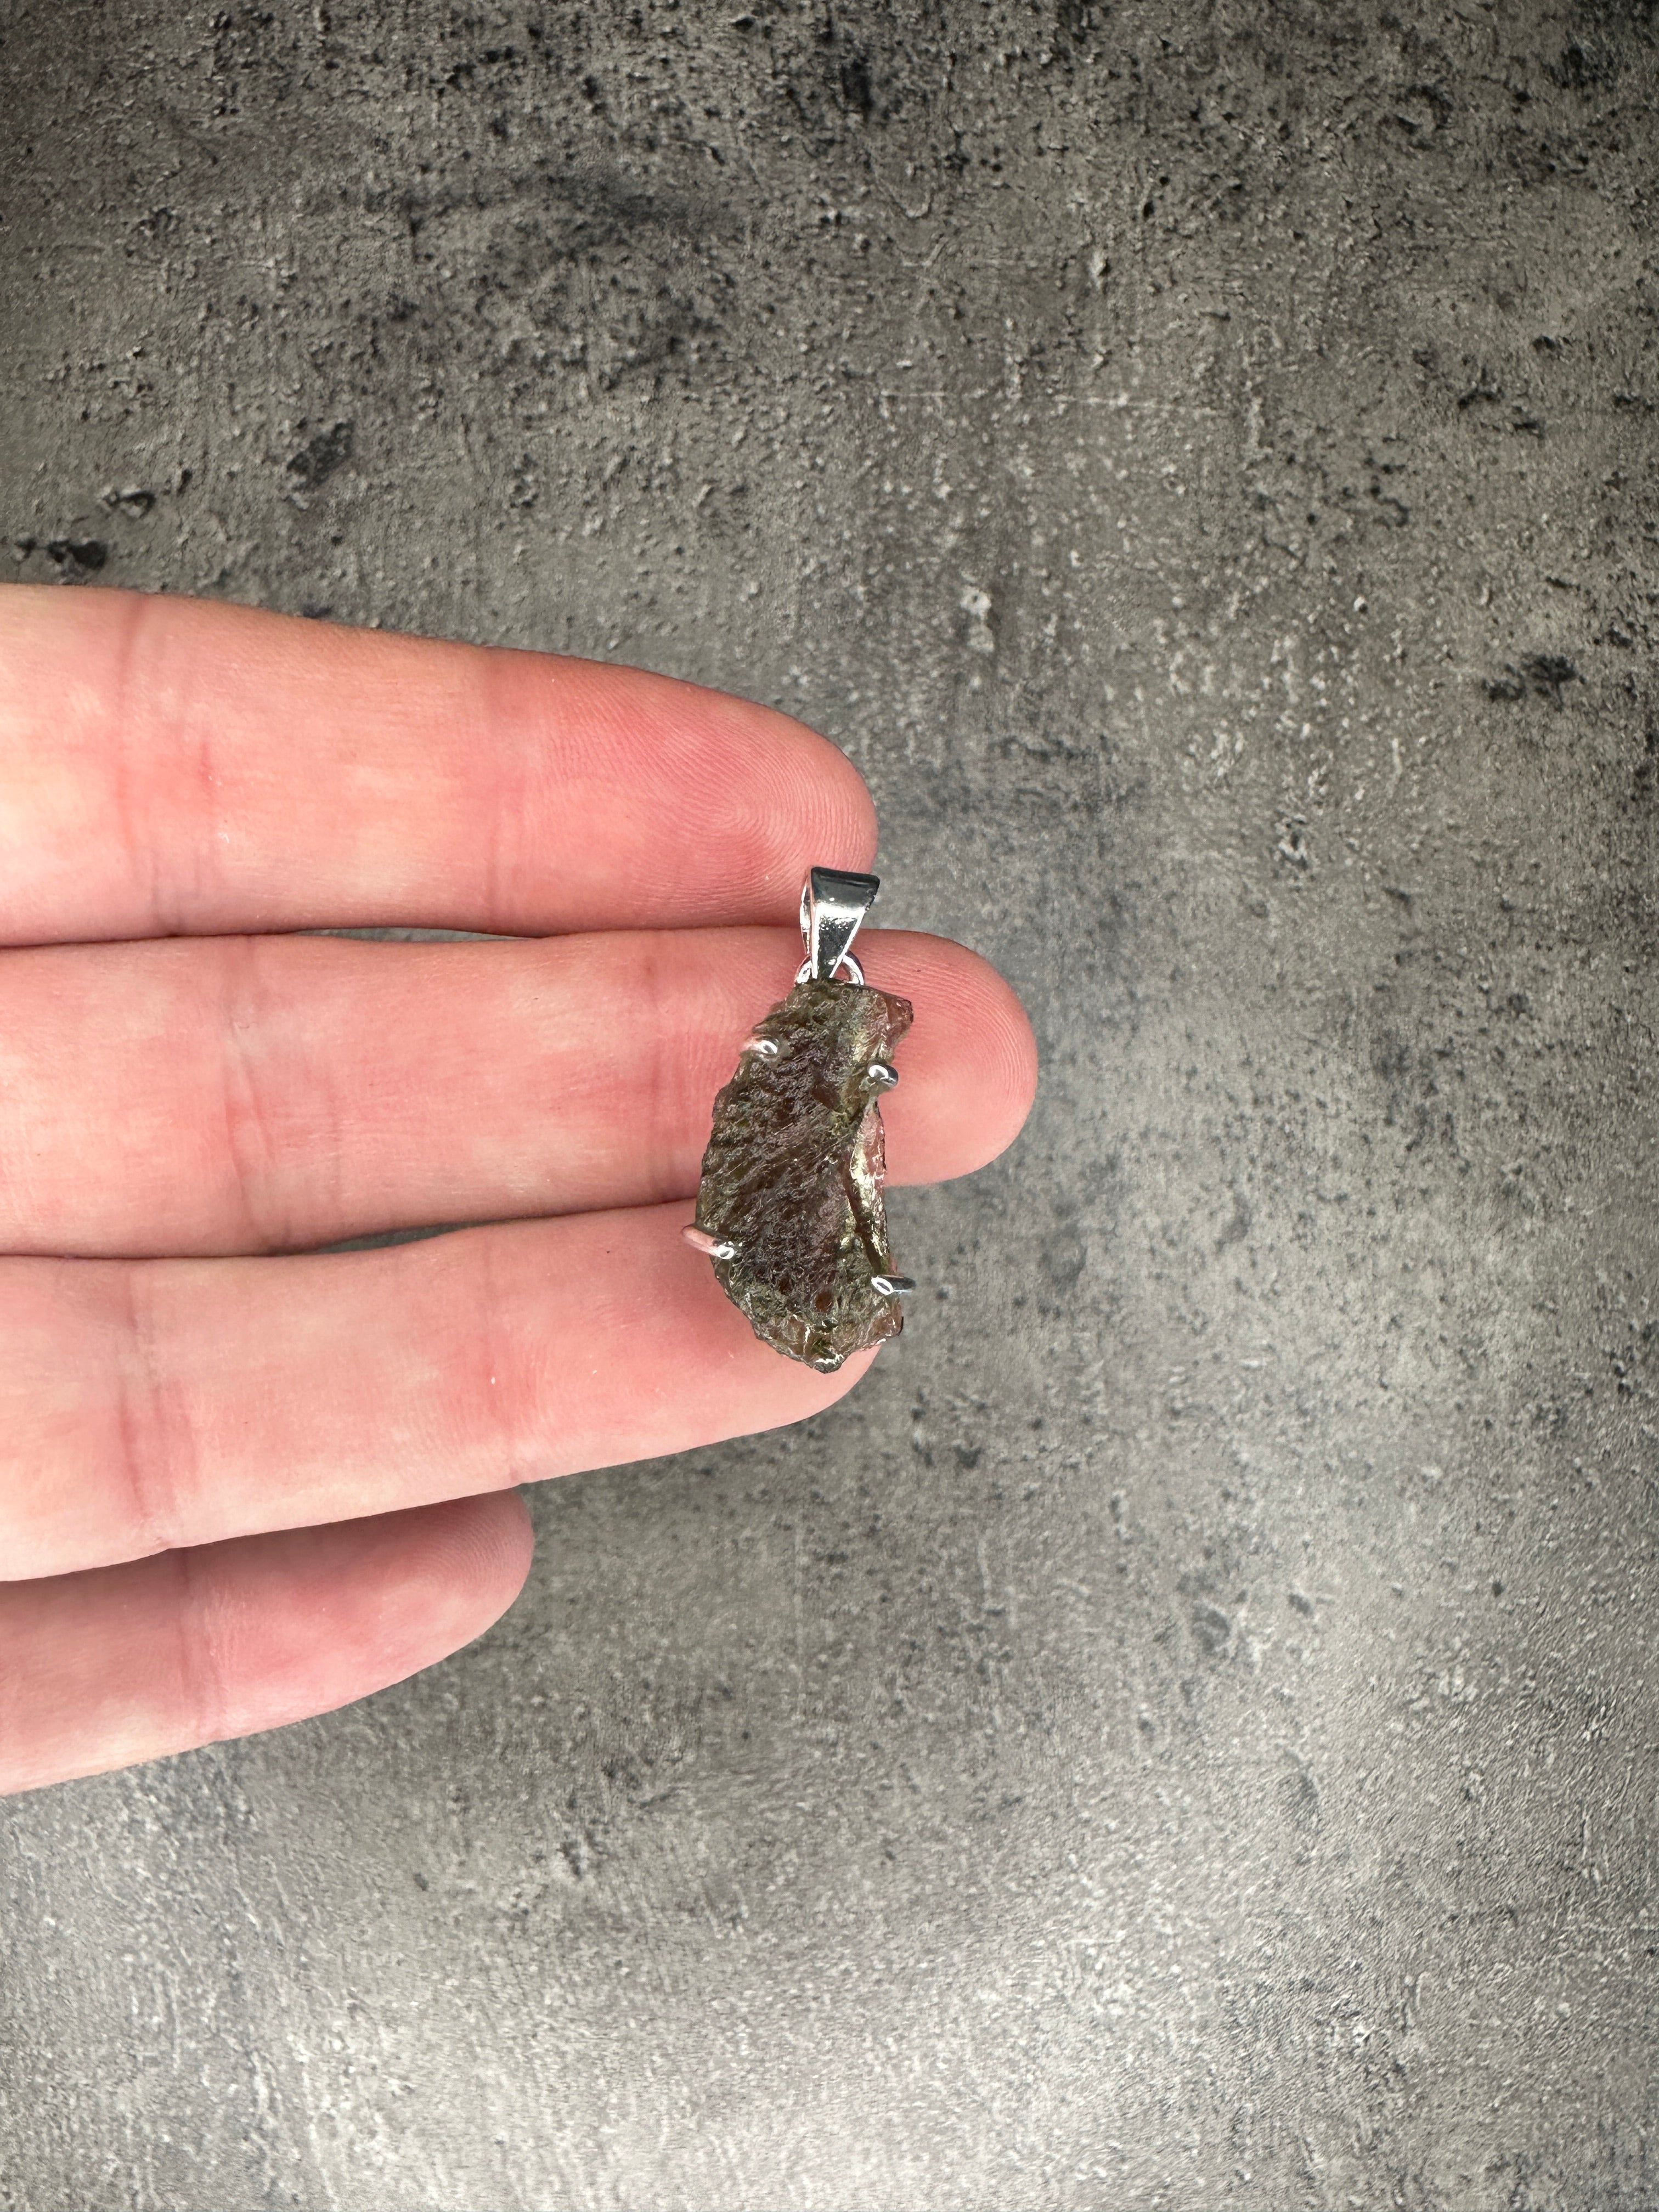 Moldavite - Rough necklace pendant